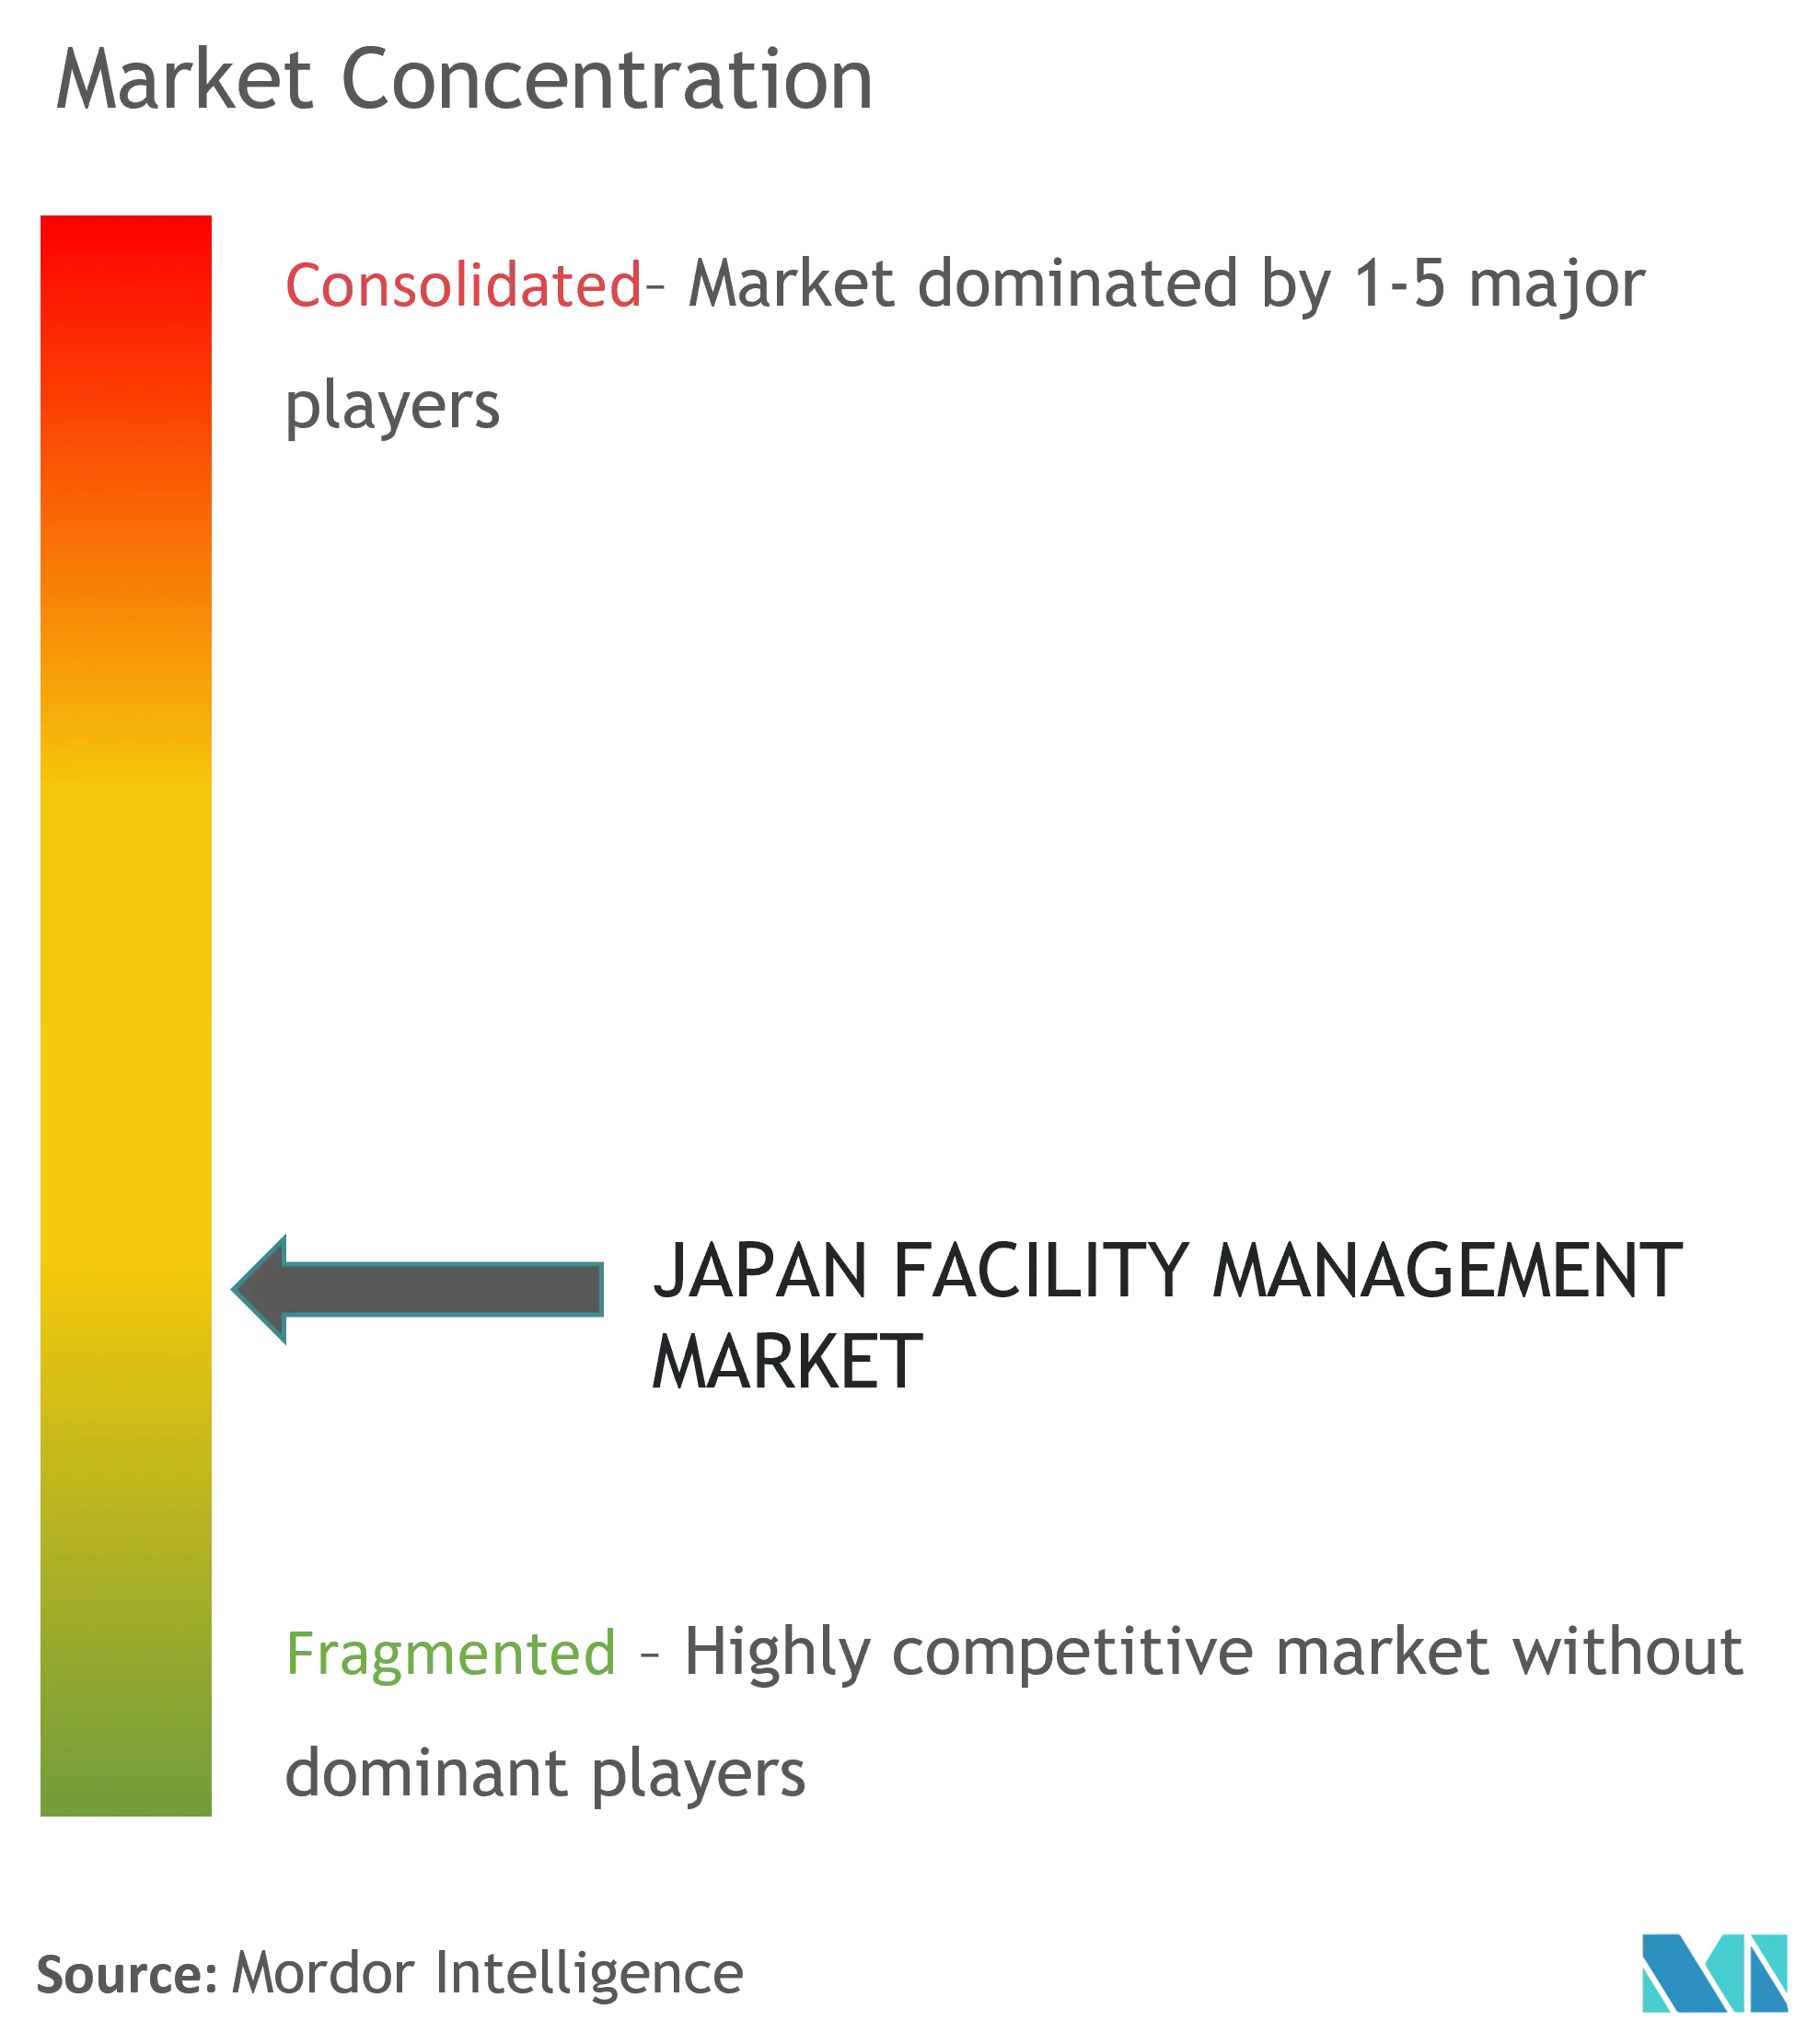 Japan FM Market - Market Concentration.png